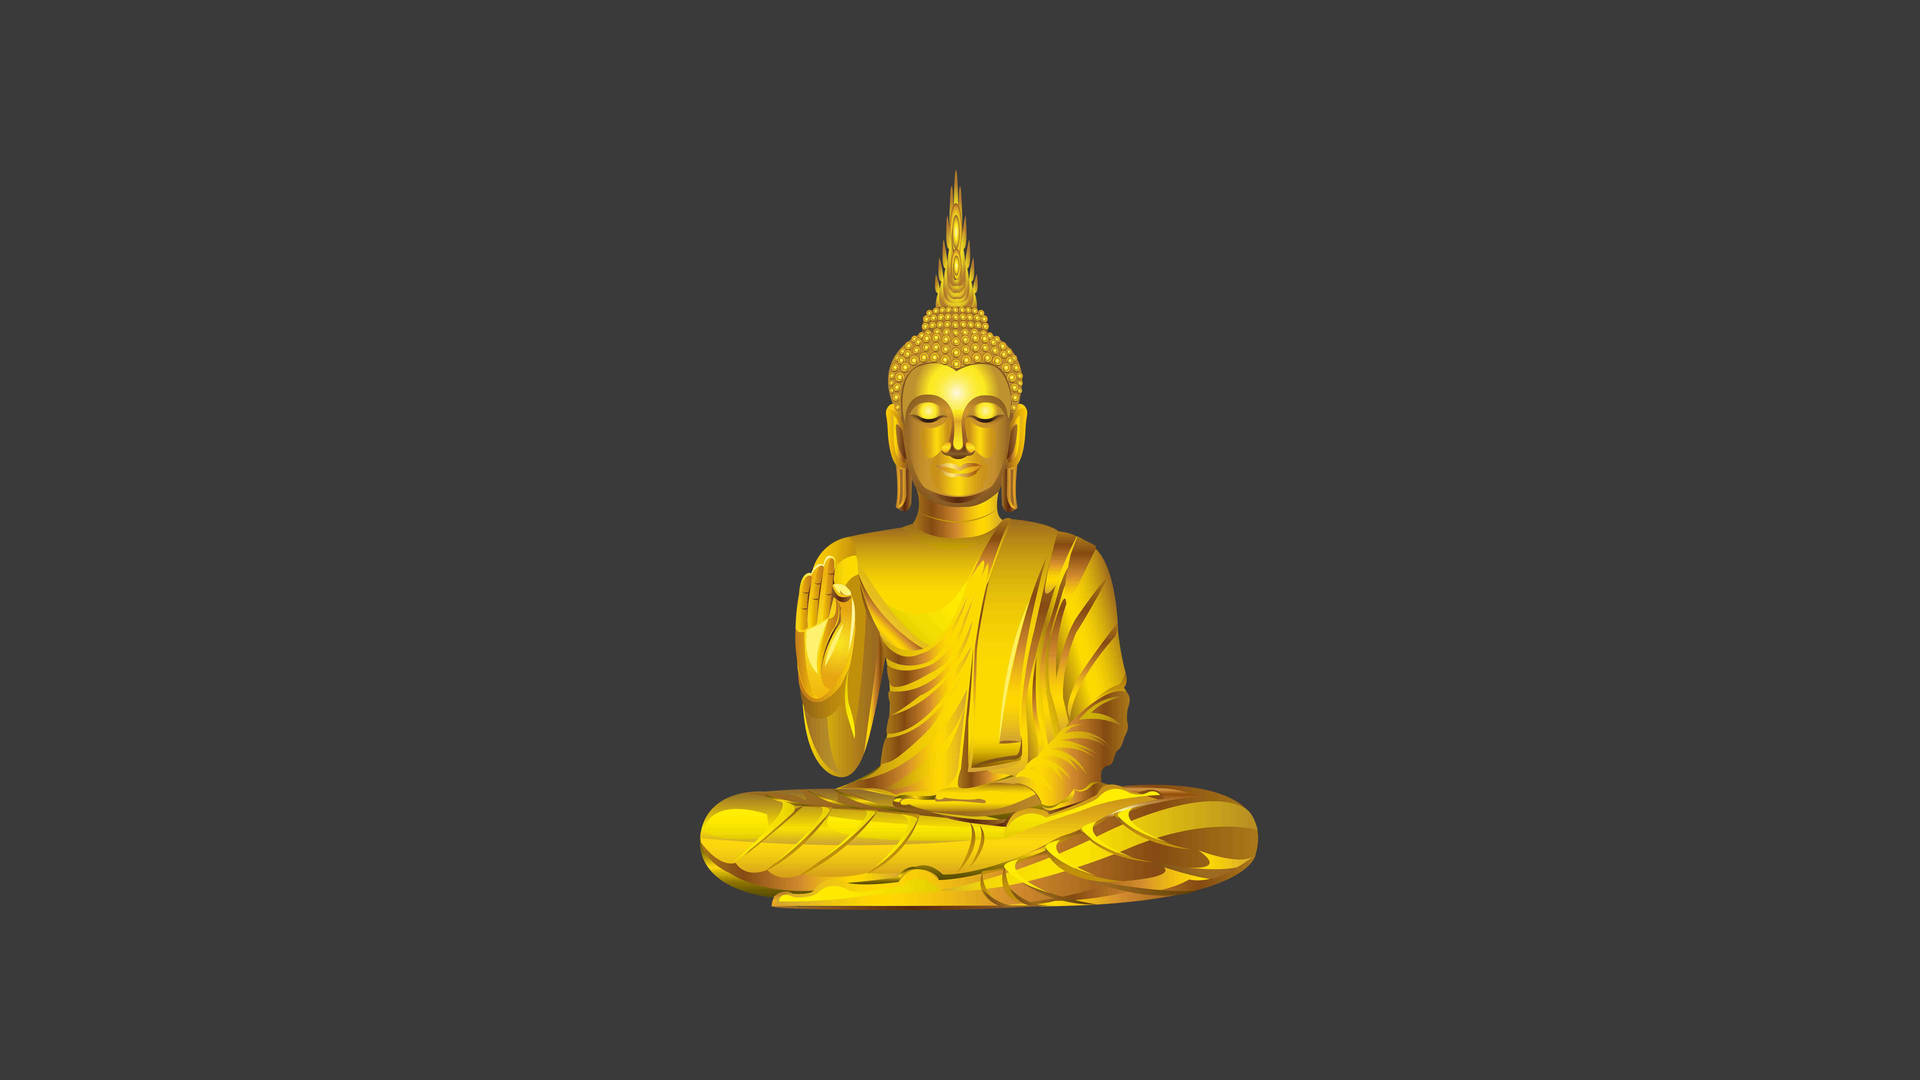 Buddha Desktop 7680 X 4320 Wallpaper